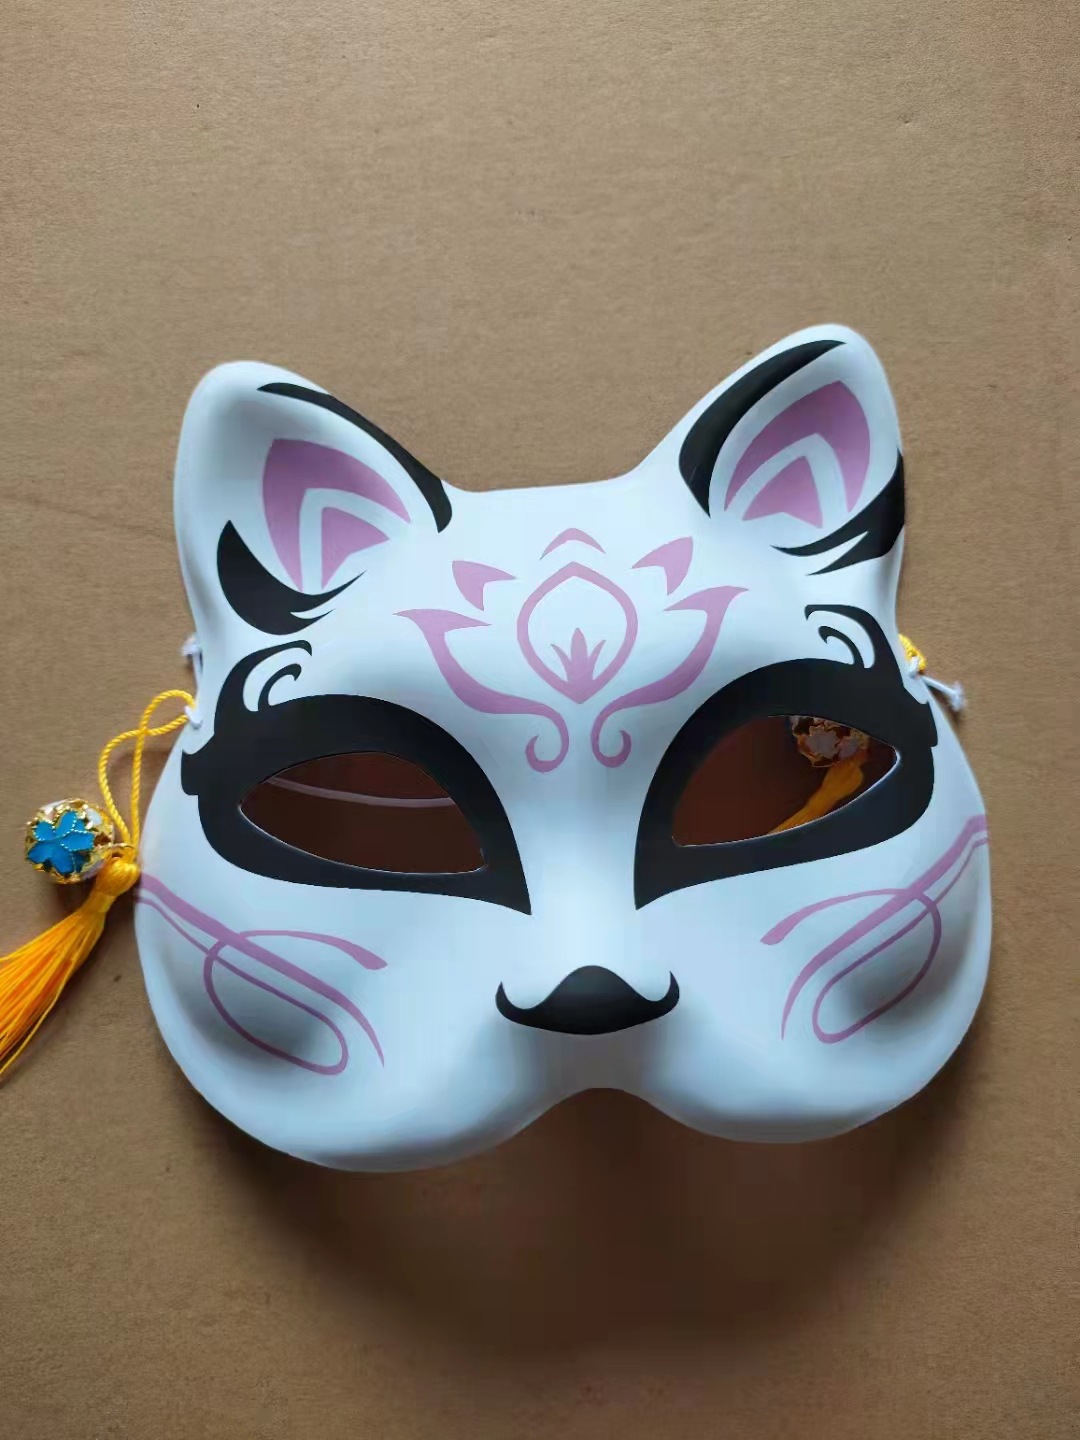 半脸猫狐狸面具日式和风动漫男女儿童款面具抖音同款舞会派对面具详情图3